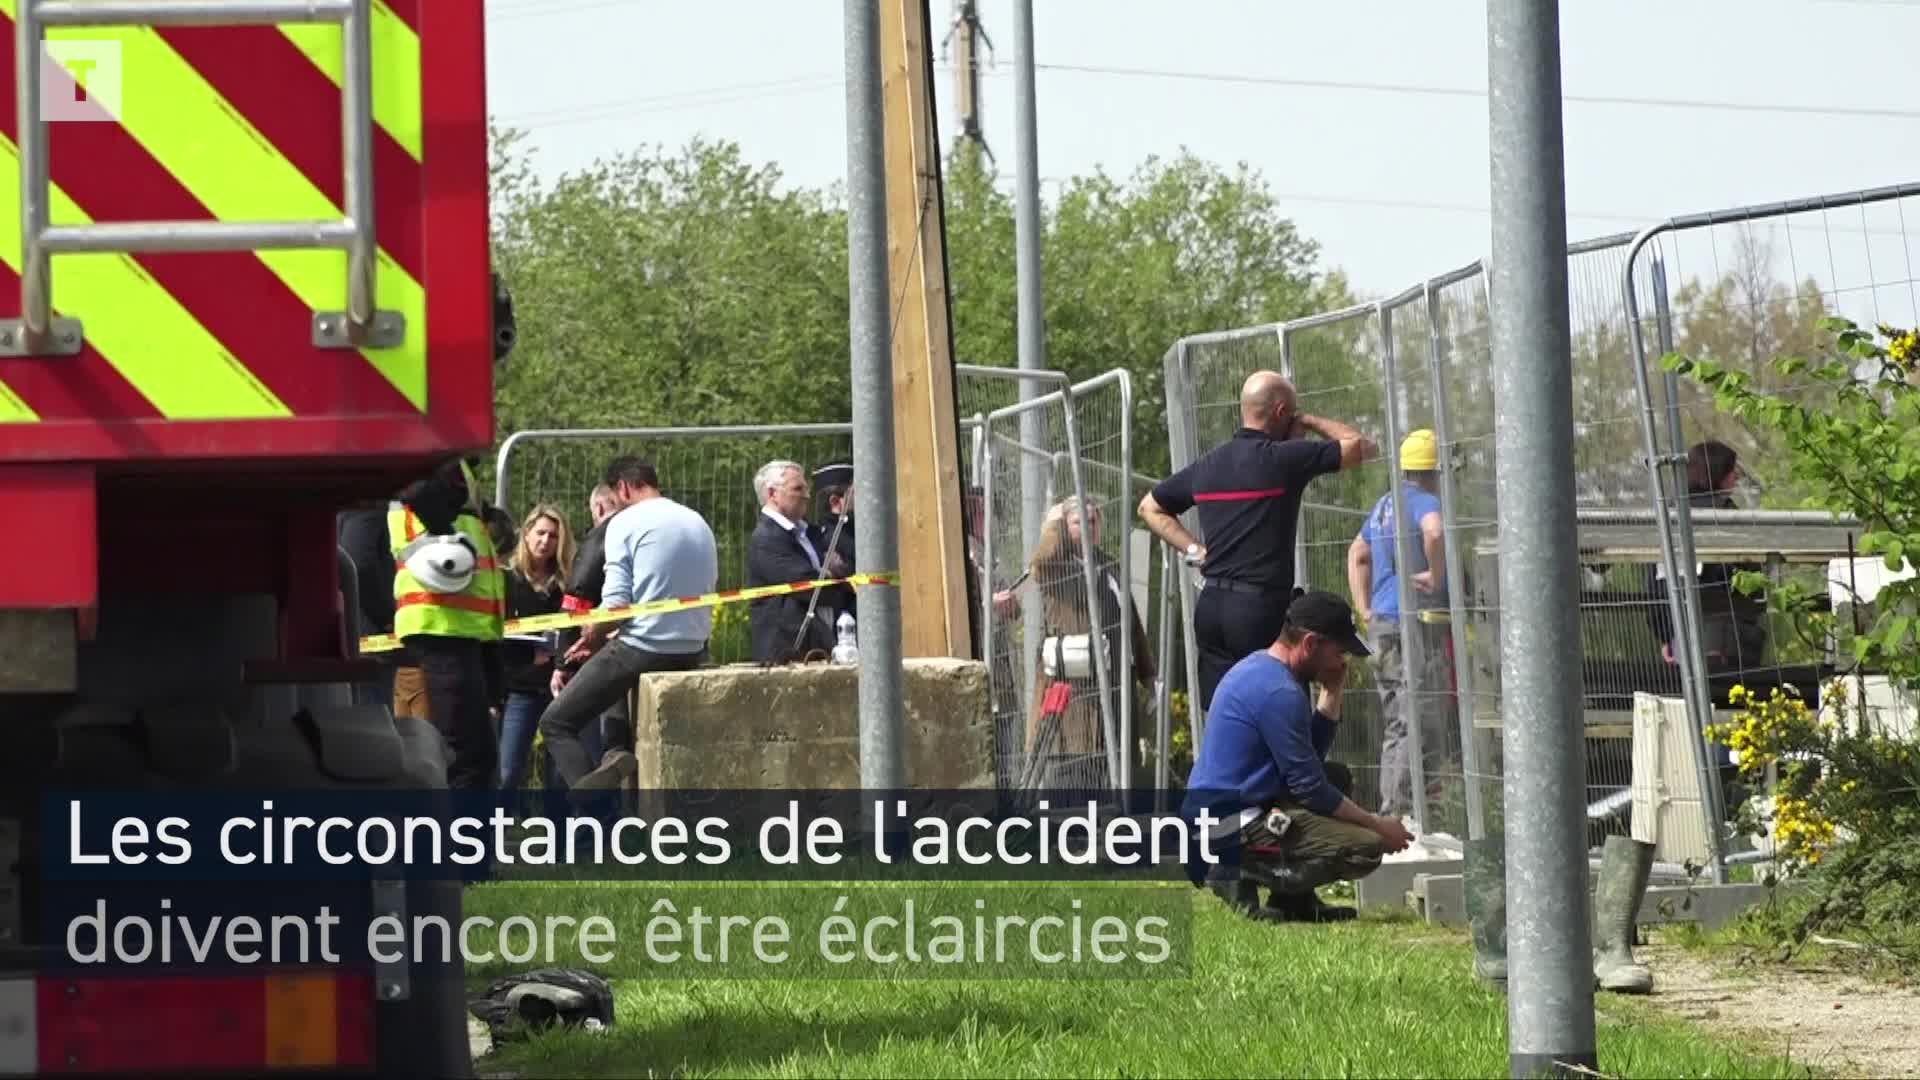 Une dalle de béton s’effondre à Brest : un mort et quatre blessés (Le Télégramme)